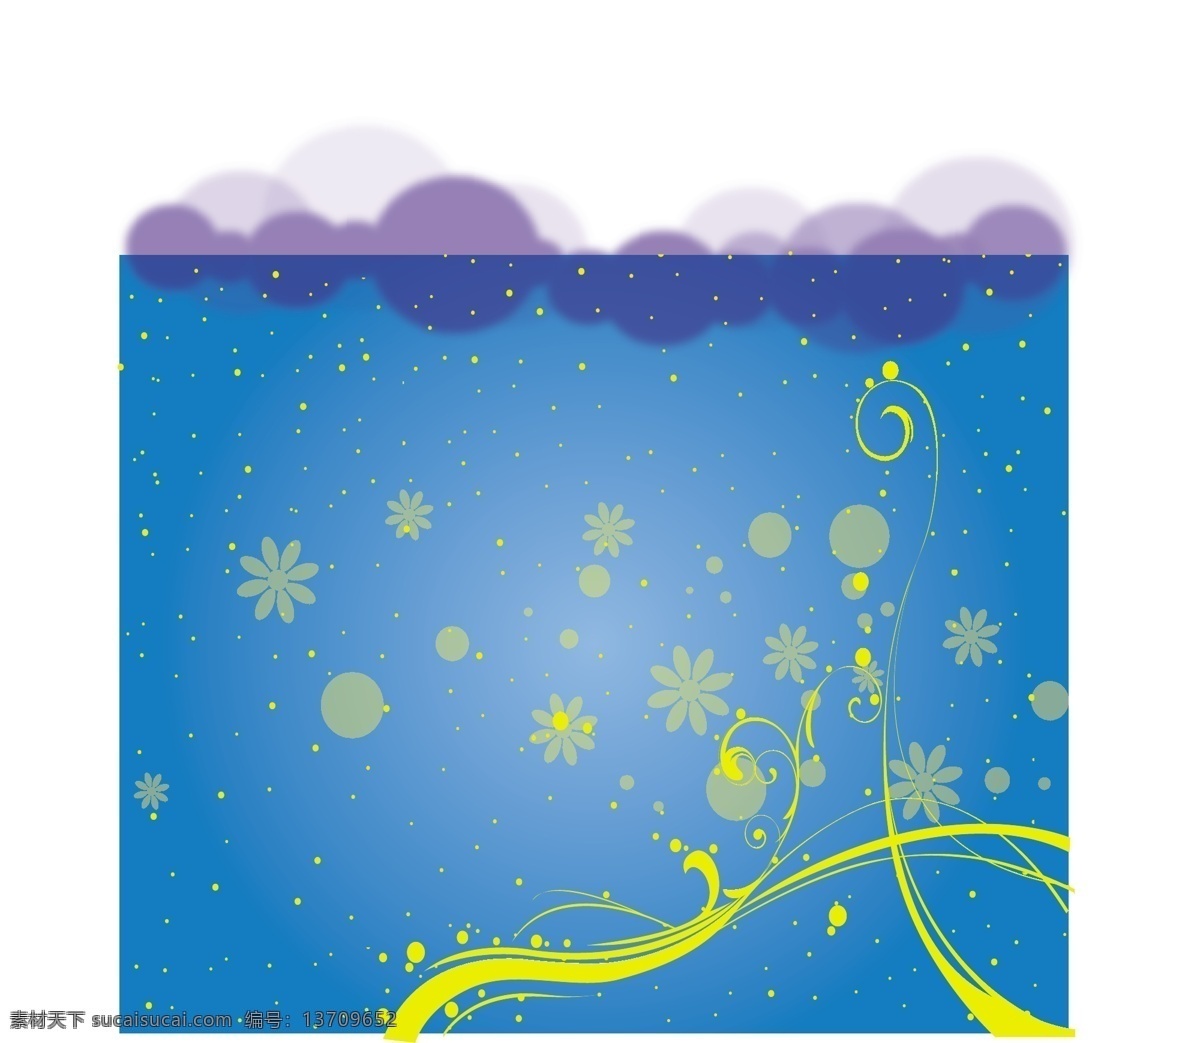 免费 矢量 背景 花 模板 蓝色的 抽象的 漩涡 云 天空 黄色 纹理 颜色 梯度 打印 复制背景 空间 天堂 设计素材